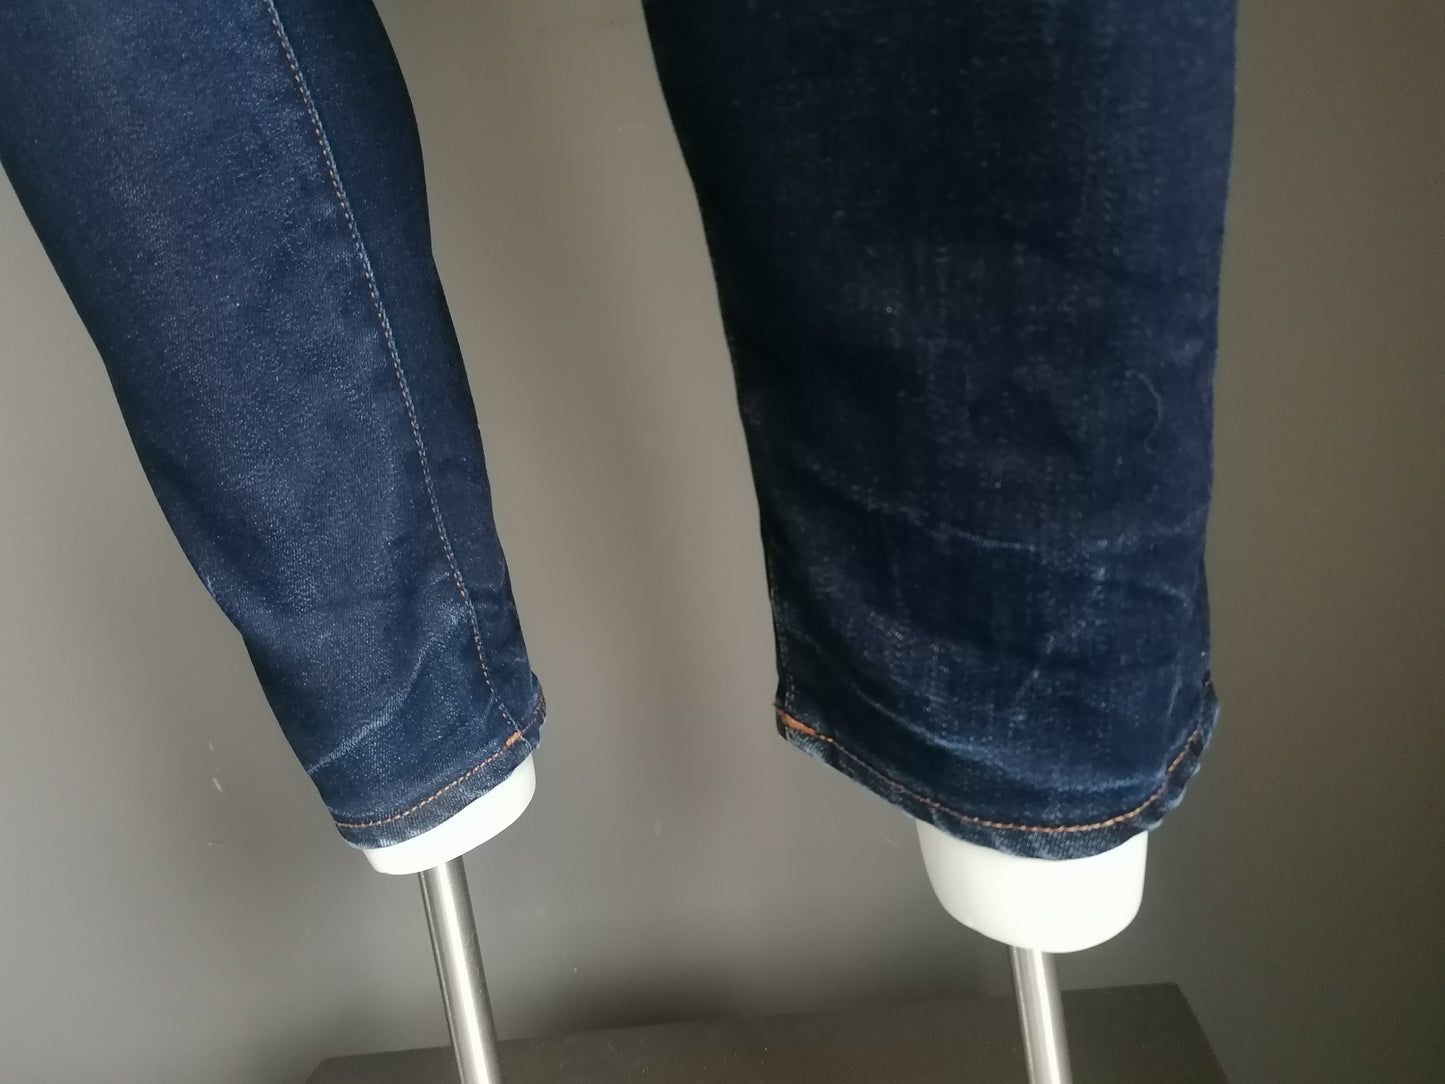 G-Star RAW jeans. Donker Blauw gekleurd. Maat W35 - L30. Slim / stretch. Type D-Shaq.